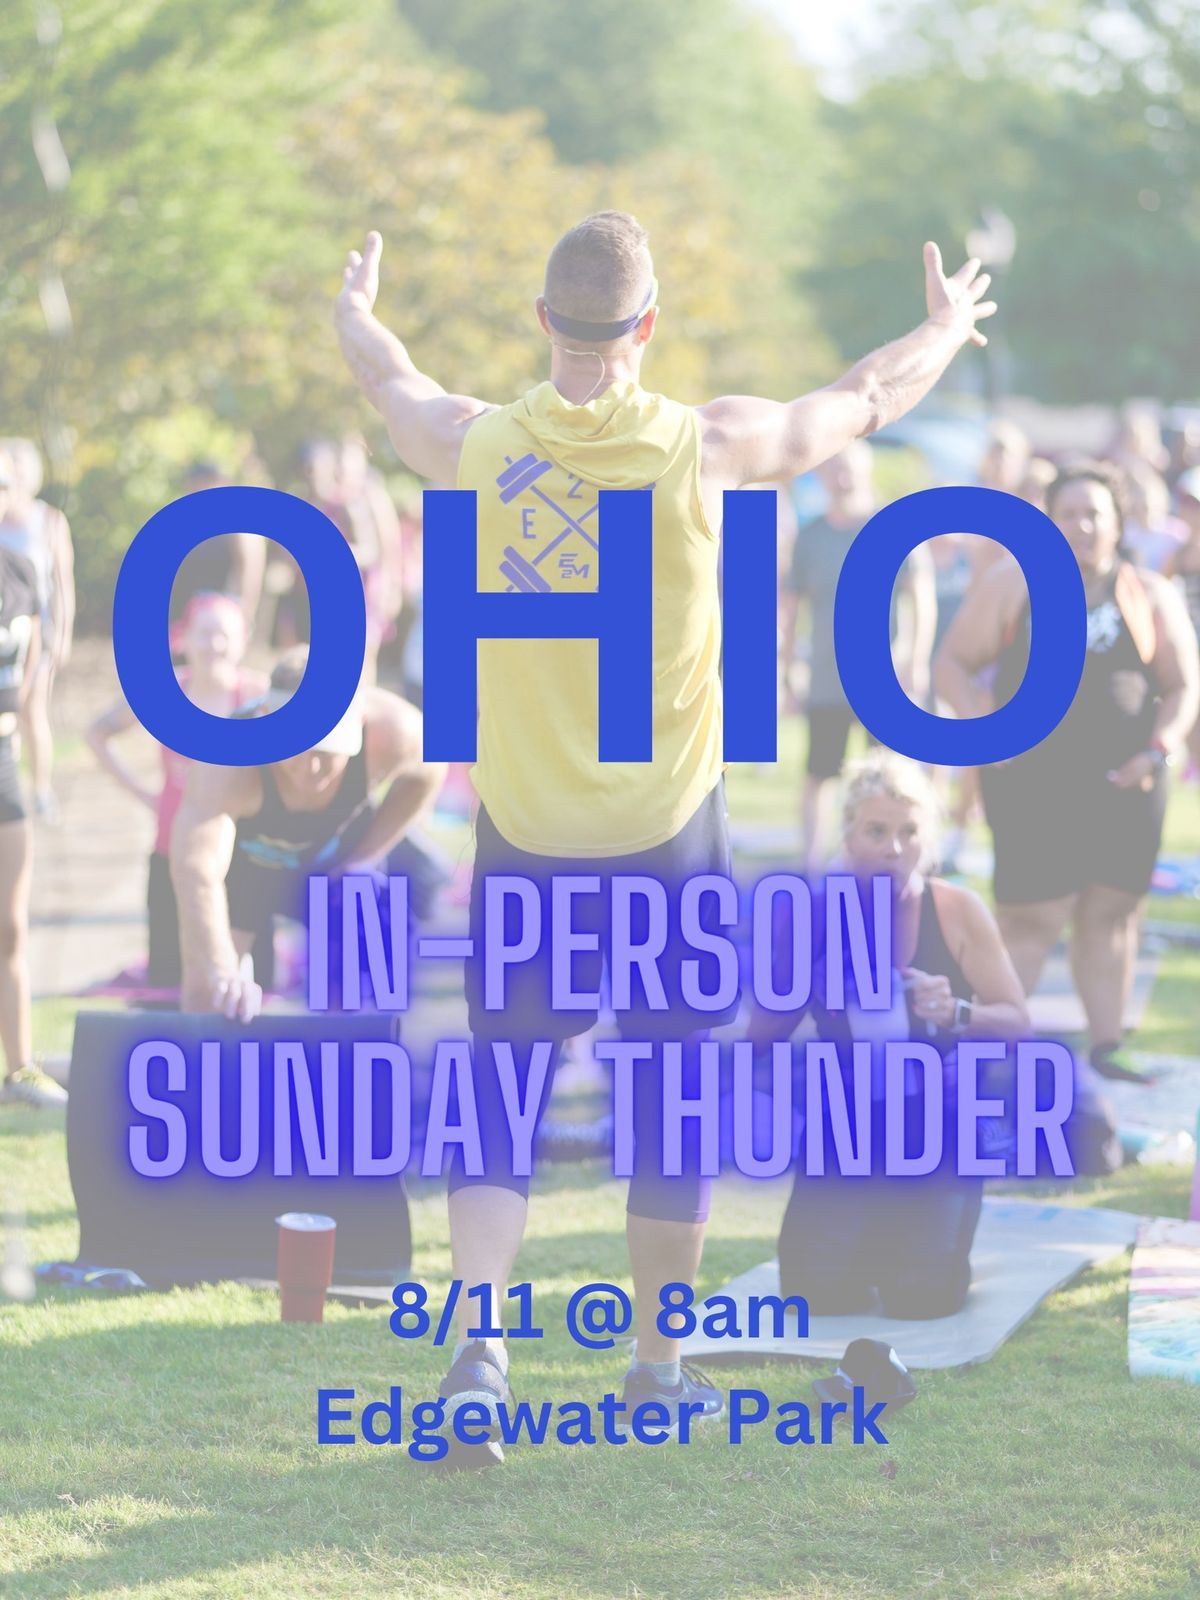 Sunday Thunder in Ohio